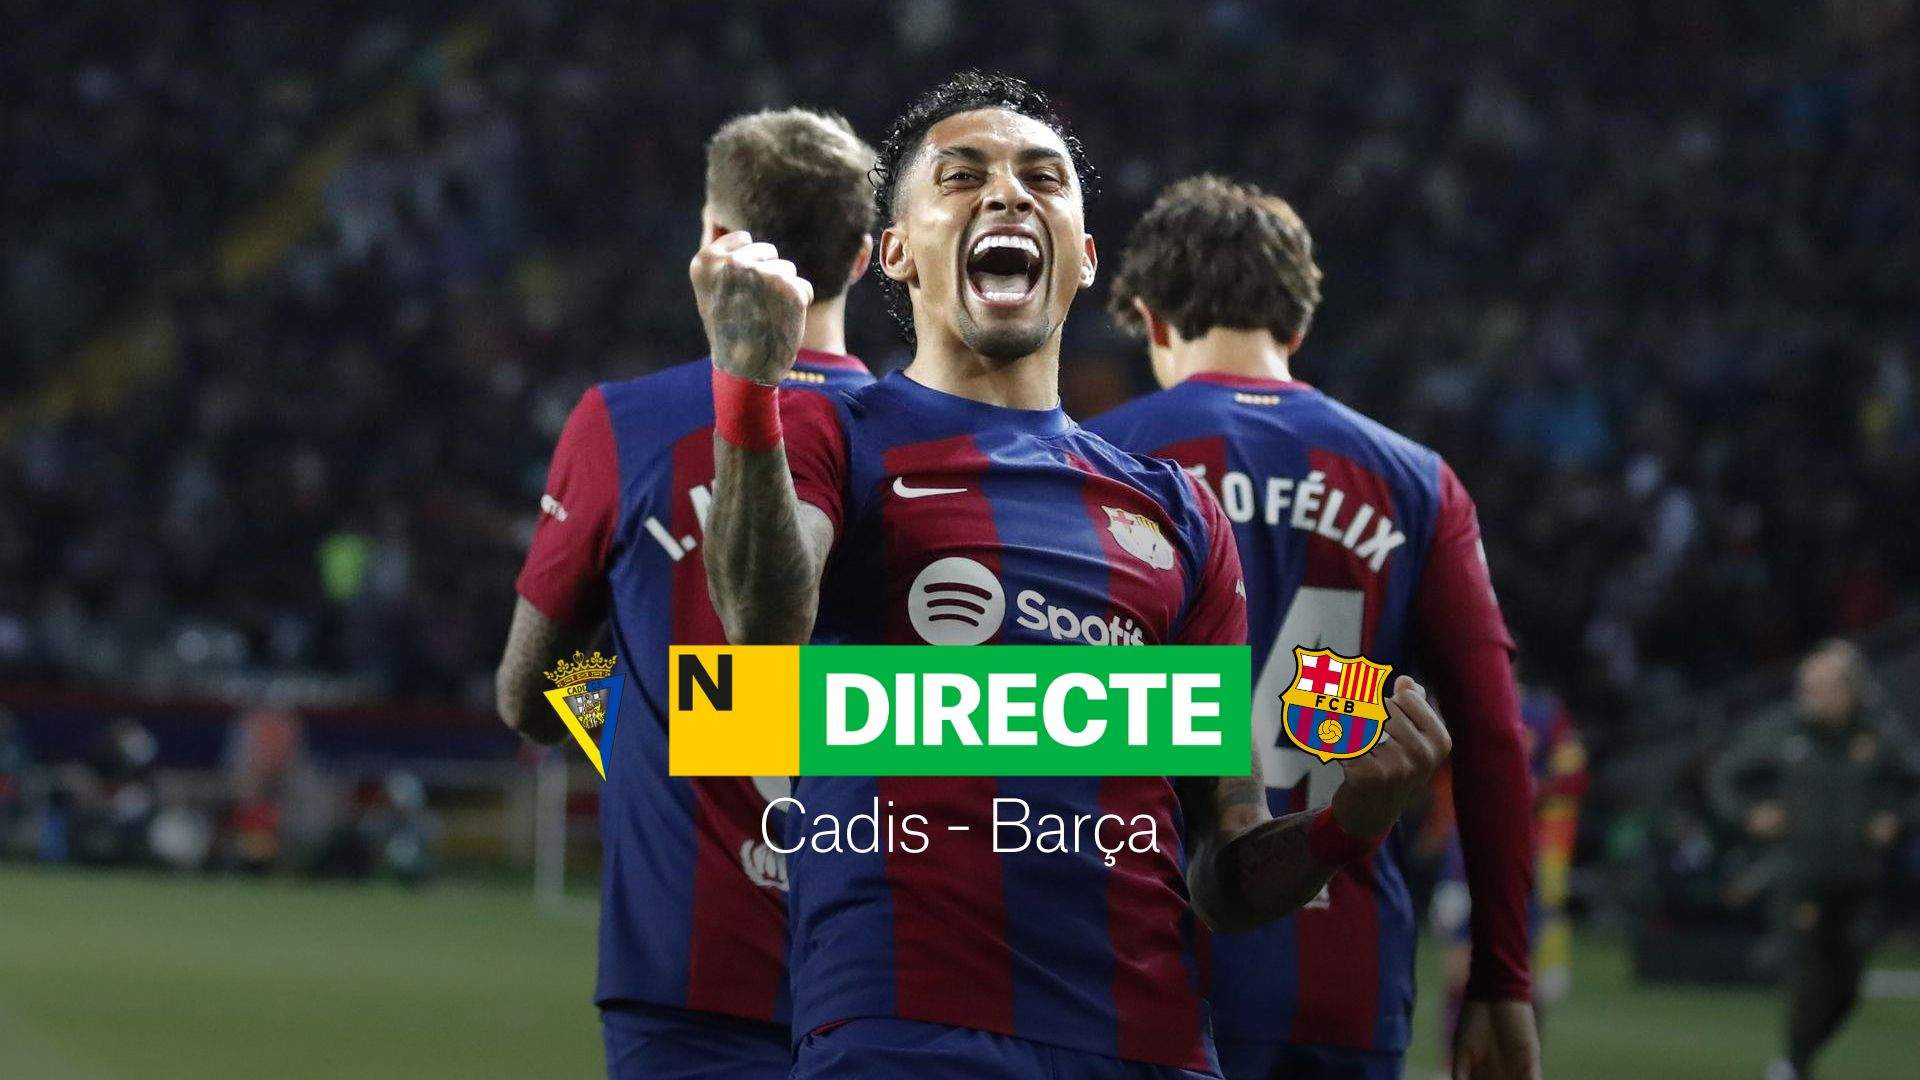 Cádiz - Barça de LaLiga EA Sports, DIRECTO | Resultado, resumen y goles